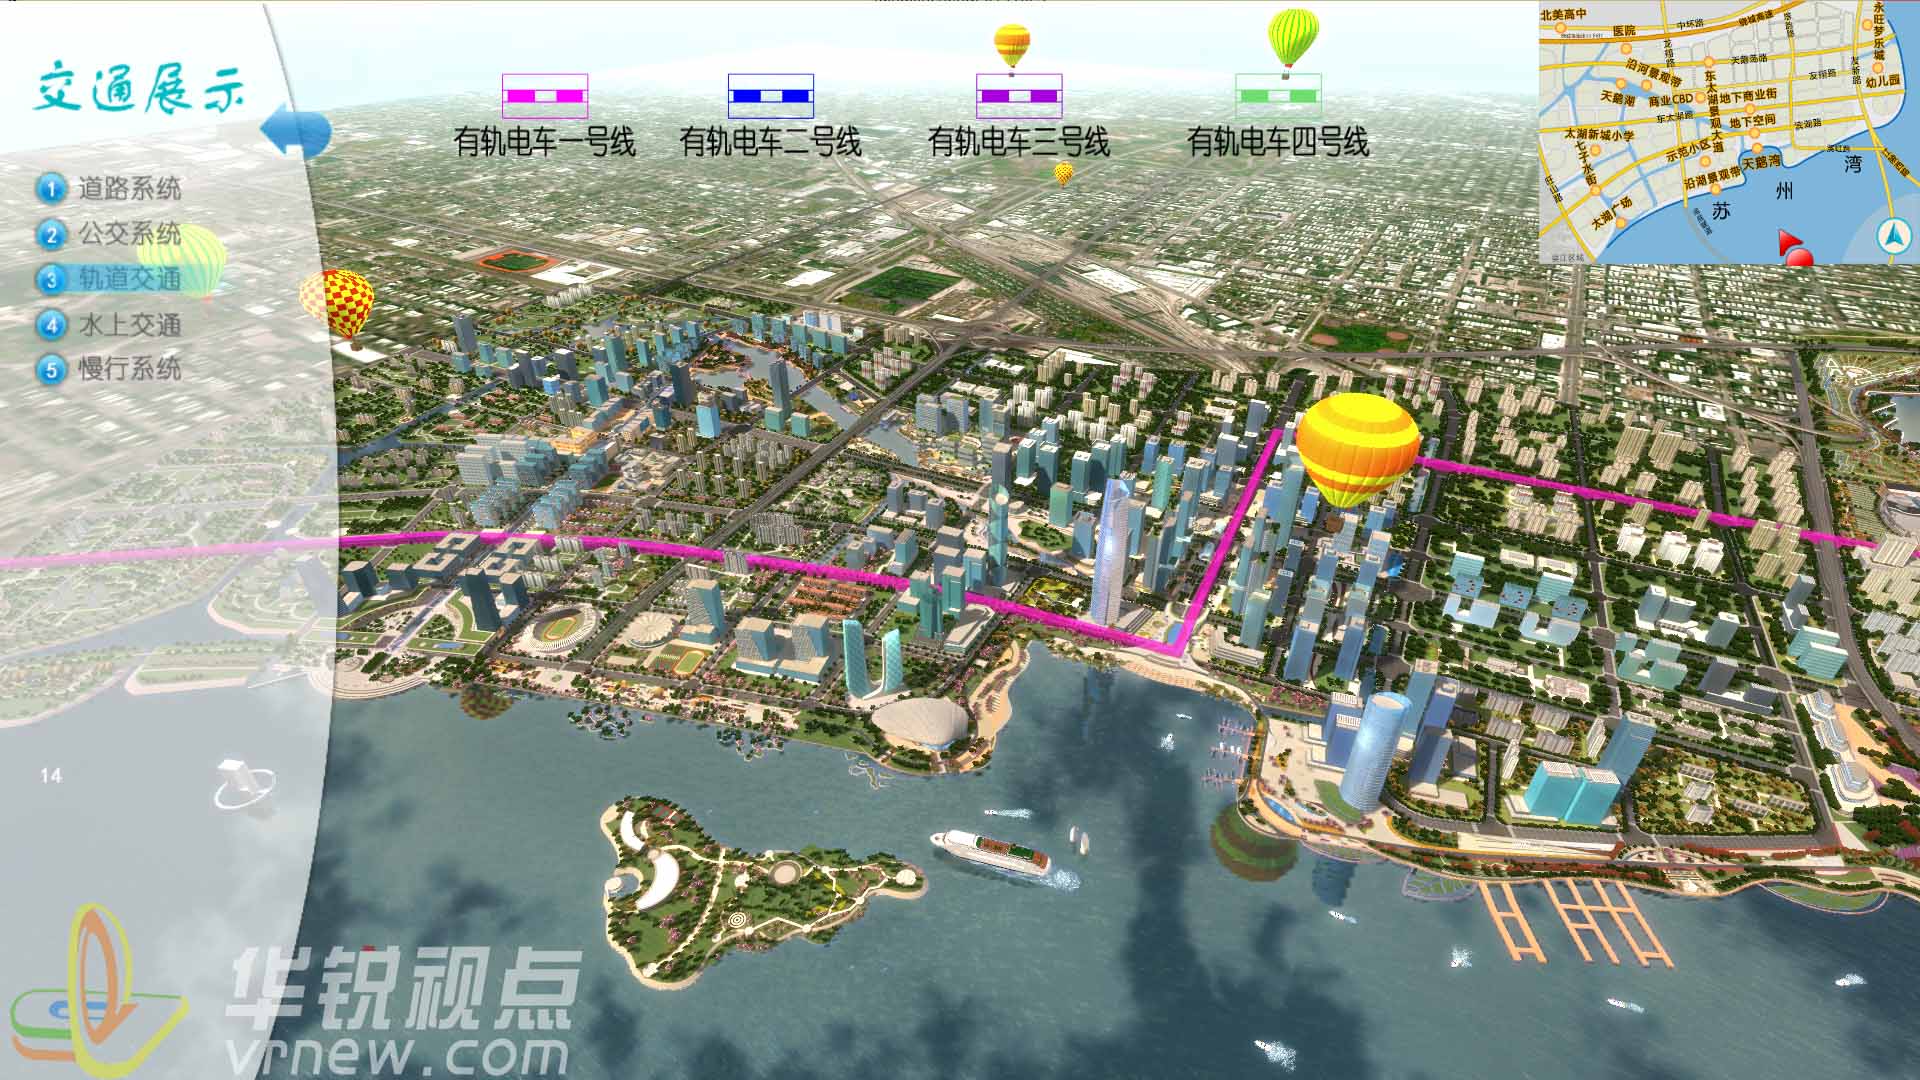 米乐m6
智慧城市展示系统